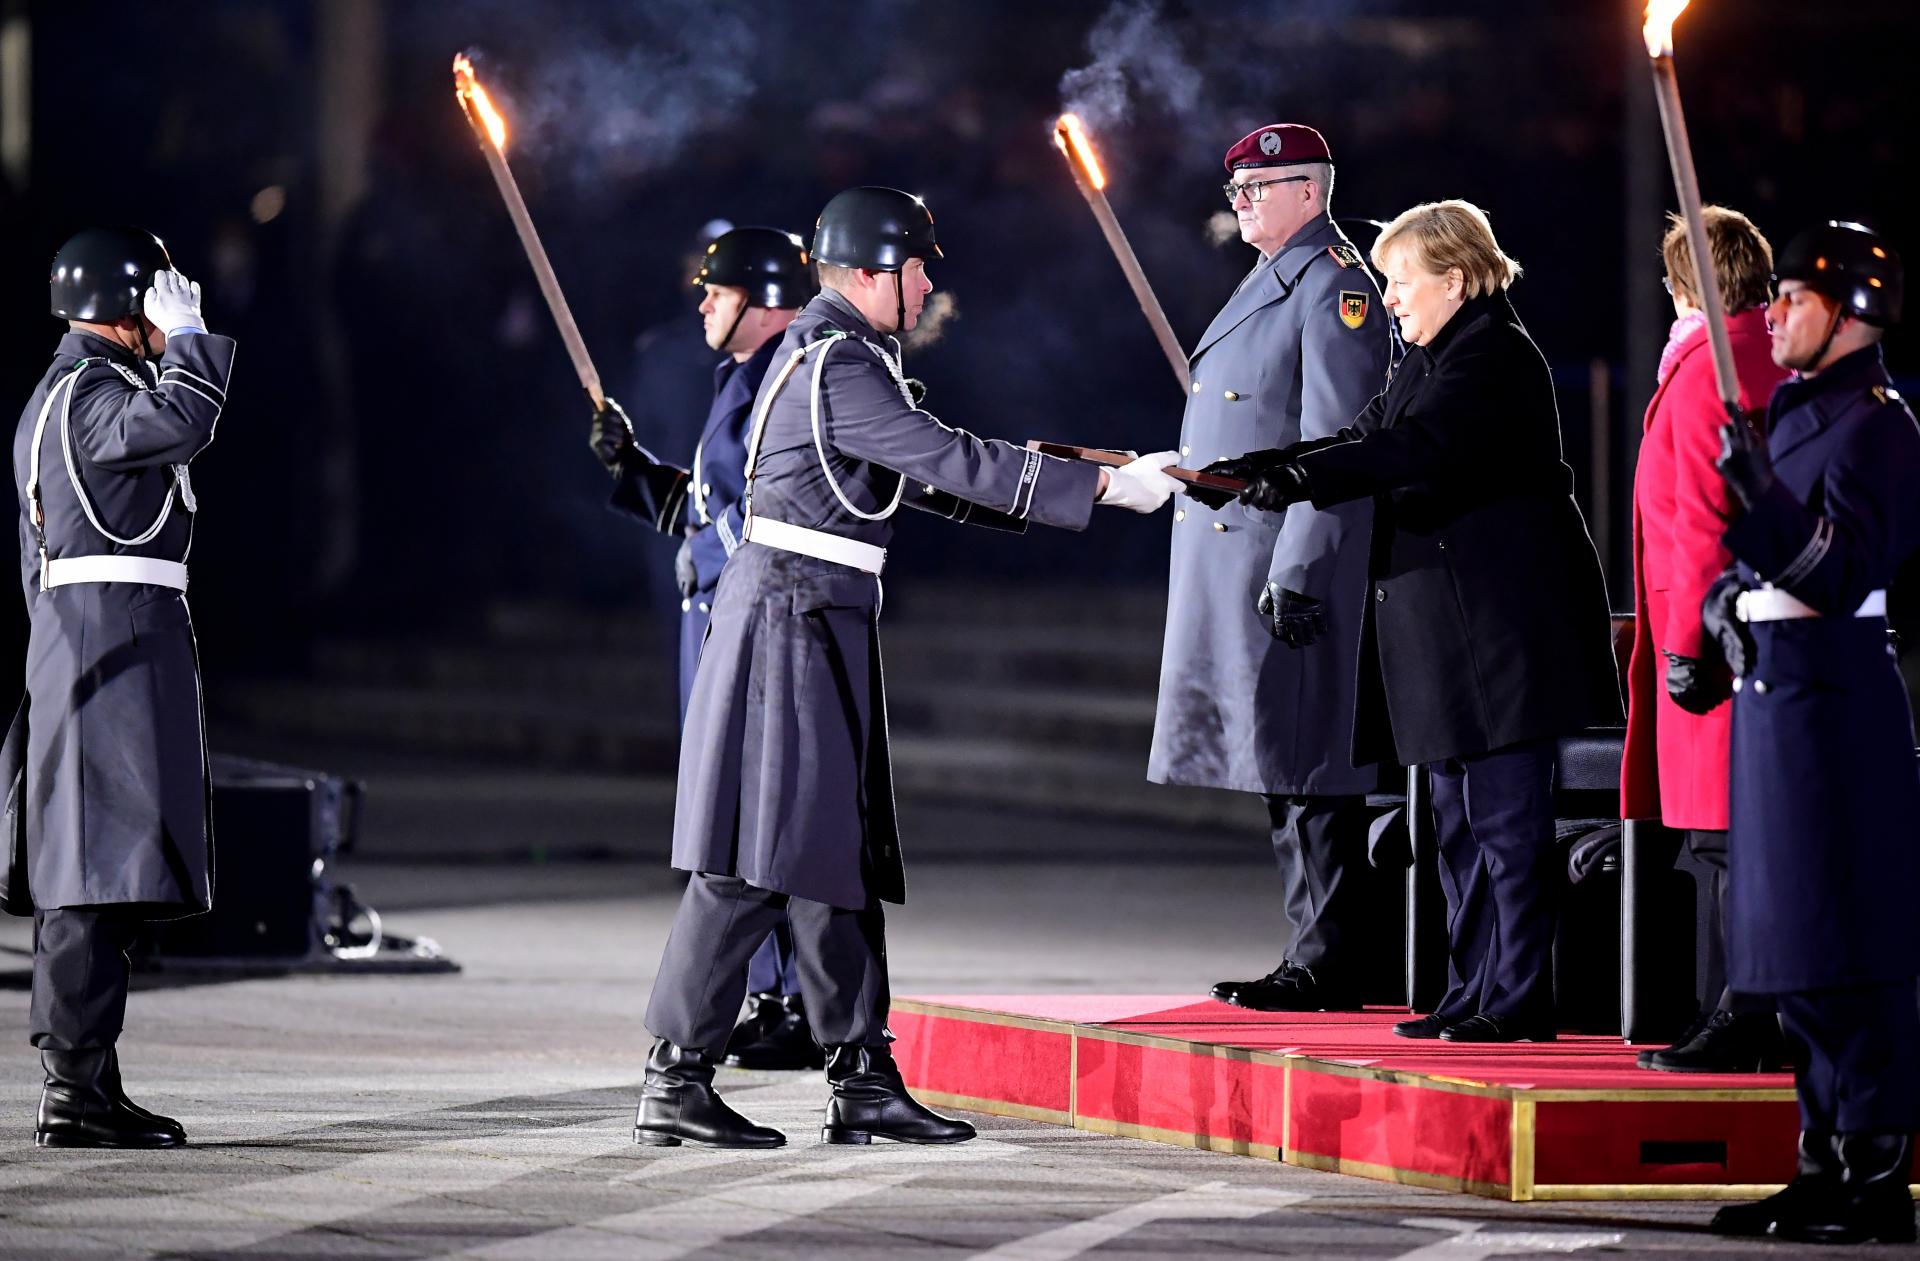 La cerimonia militare per salutare la cancelliera Angela Merkel